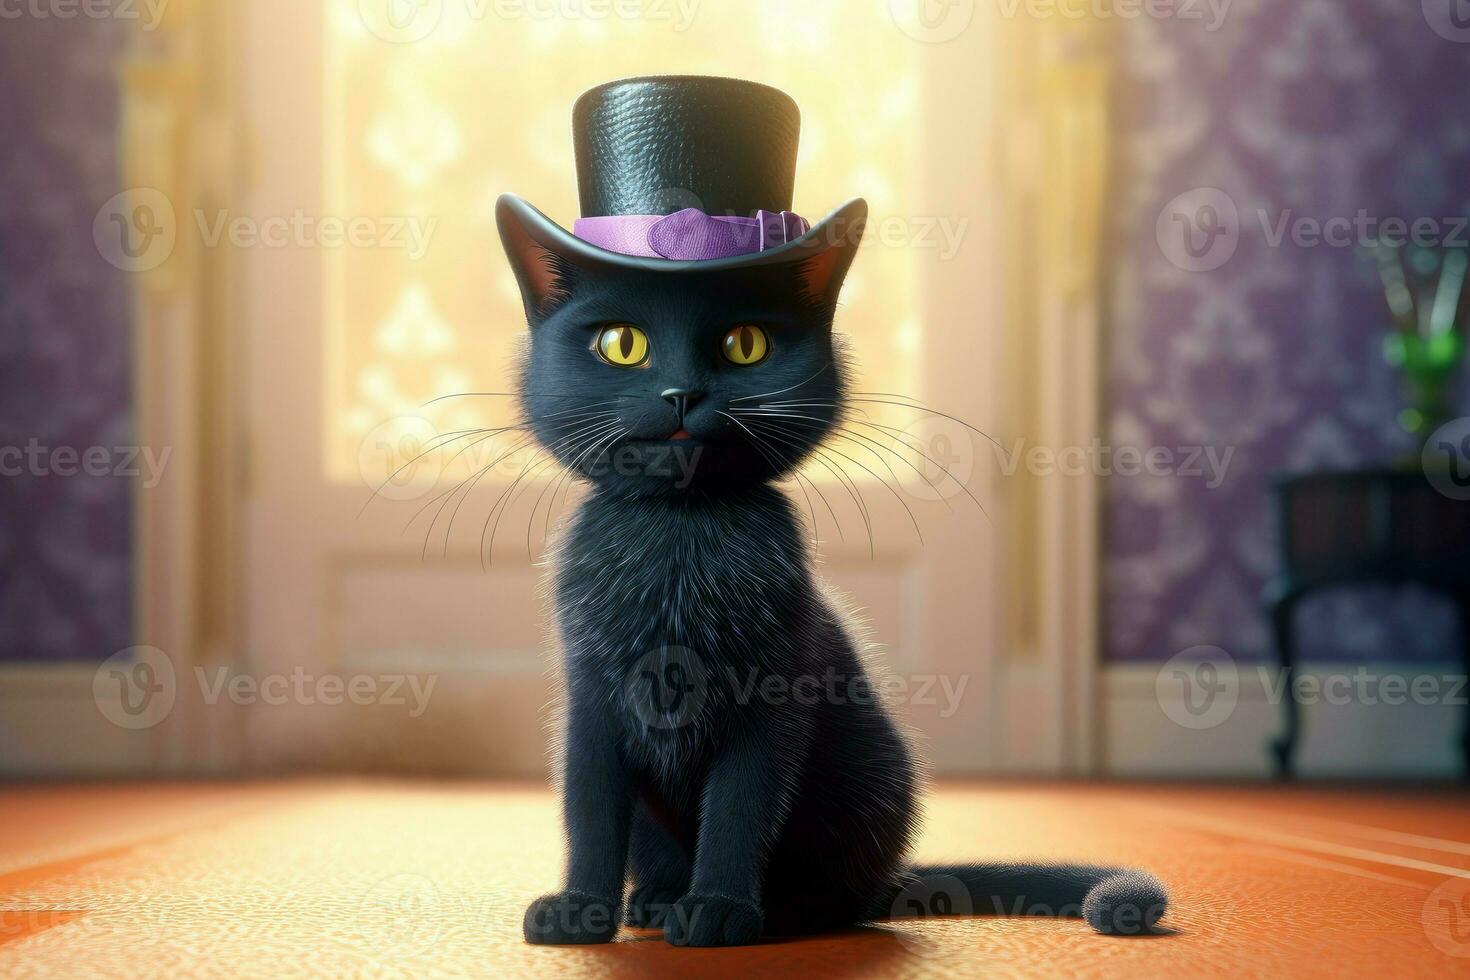 Cute little black cat. Generate AI photo